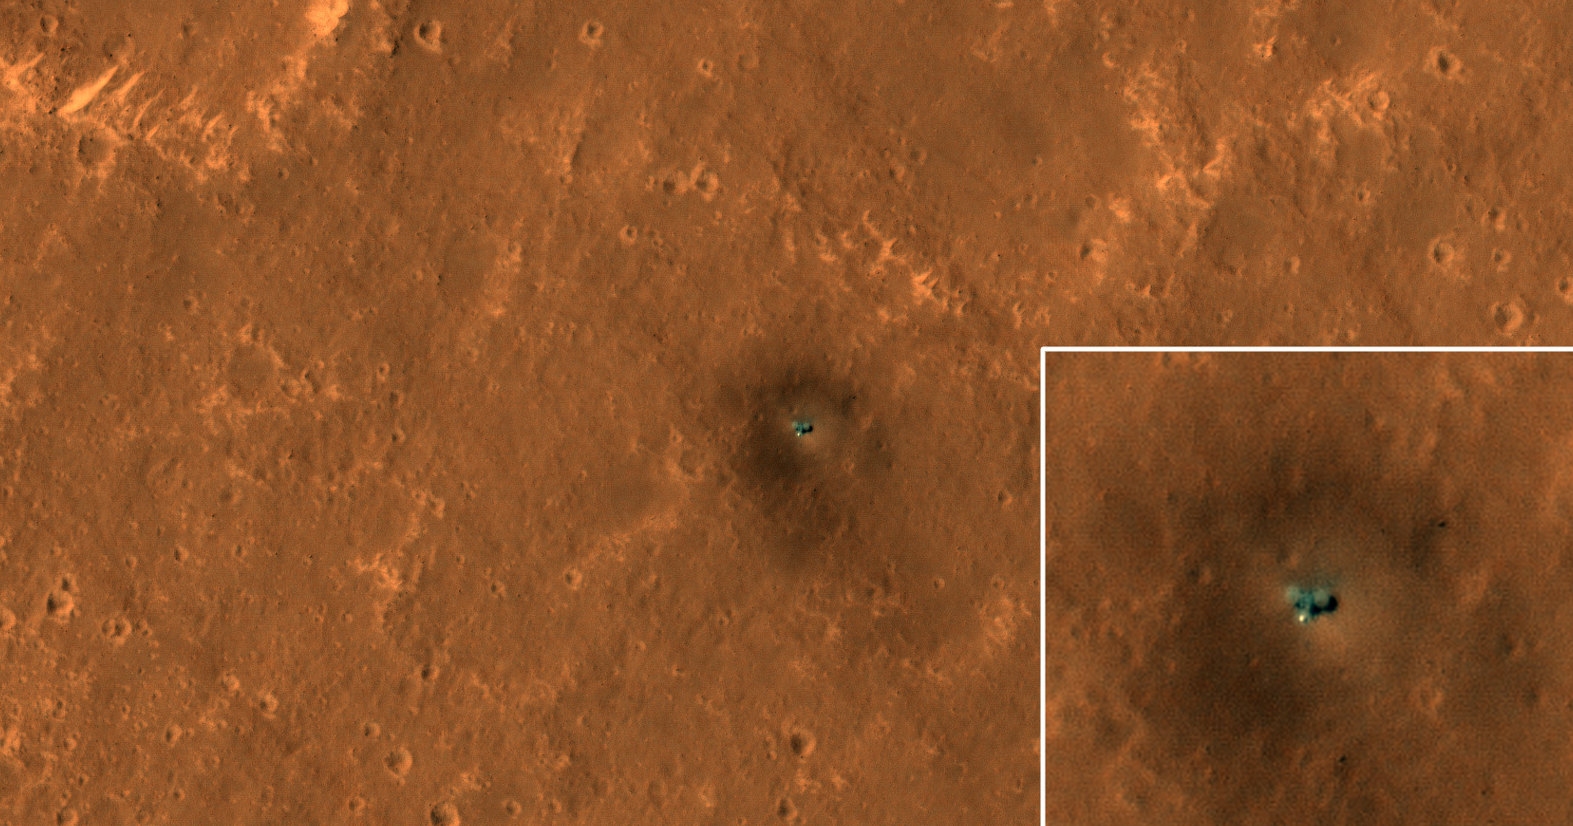 Зонды InSight и Curiosity на поверхности Марса: спутниковые снимки